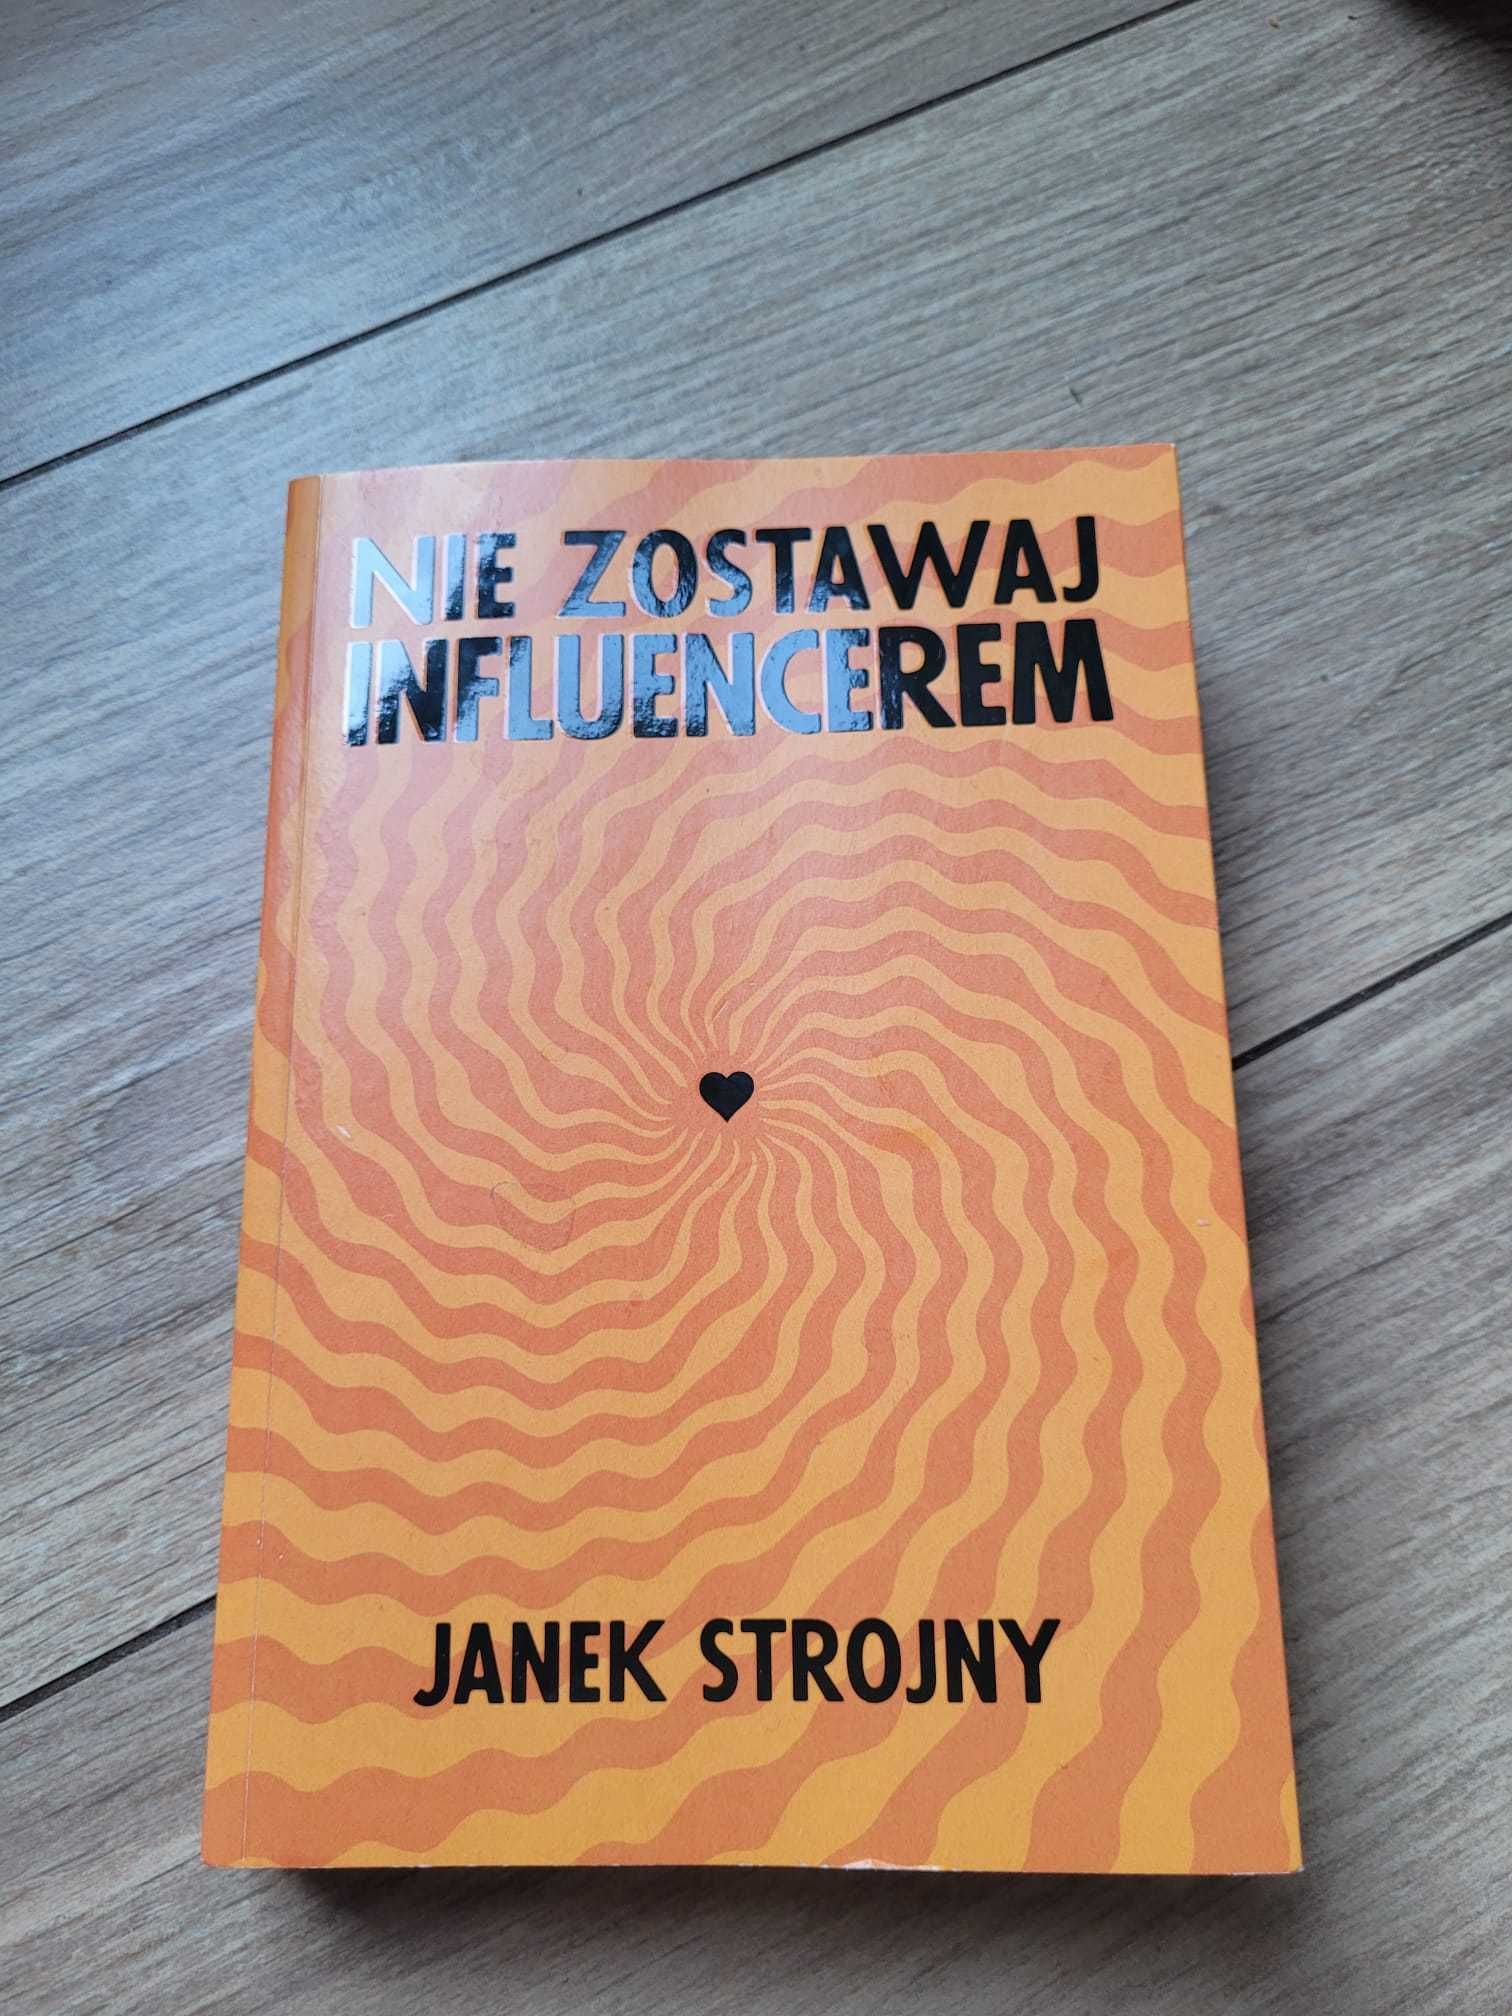 książka Jacek Strojny "Nie zostawaj influencerem"